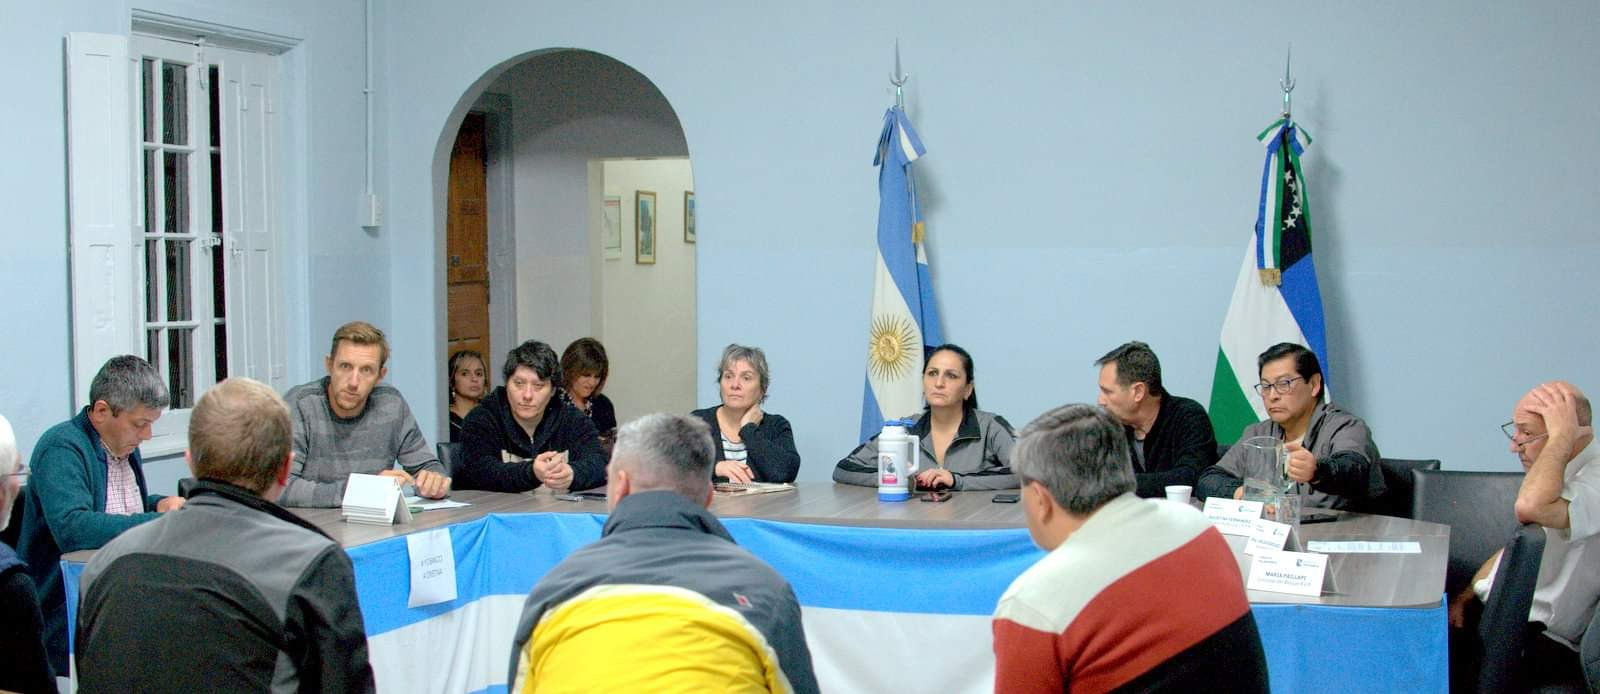 El Consejo de Seguridad Ciudadana se reunió con referentes de sistemas de alarmas comunitarias. (Foto gentileza)